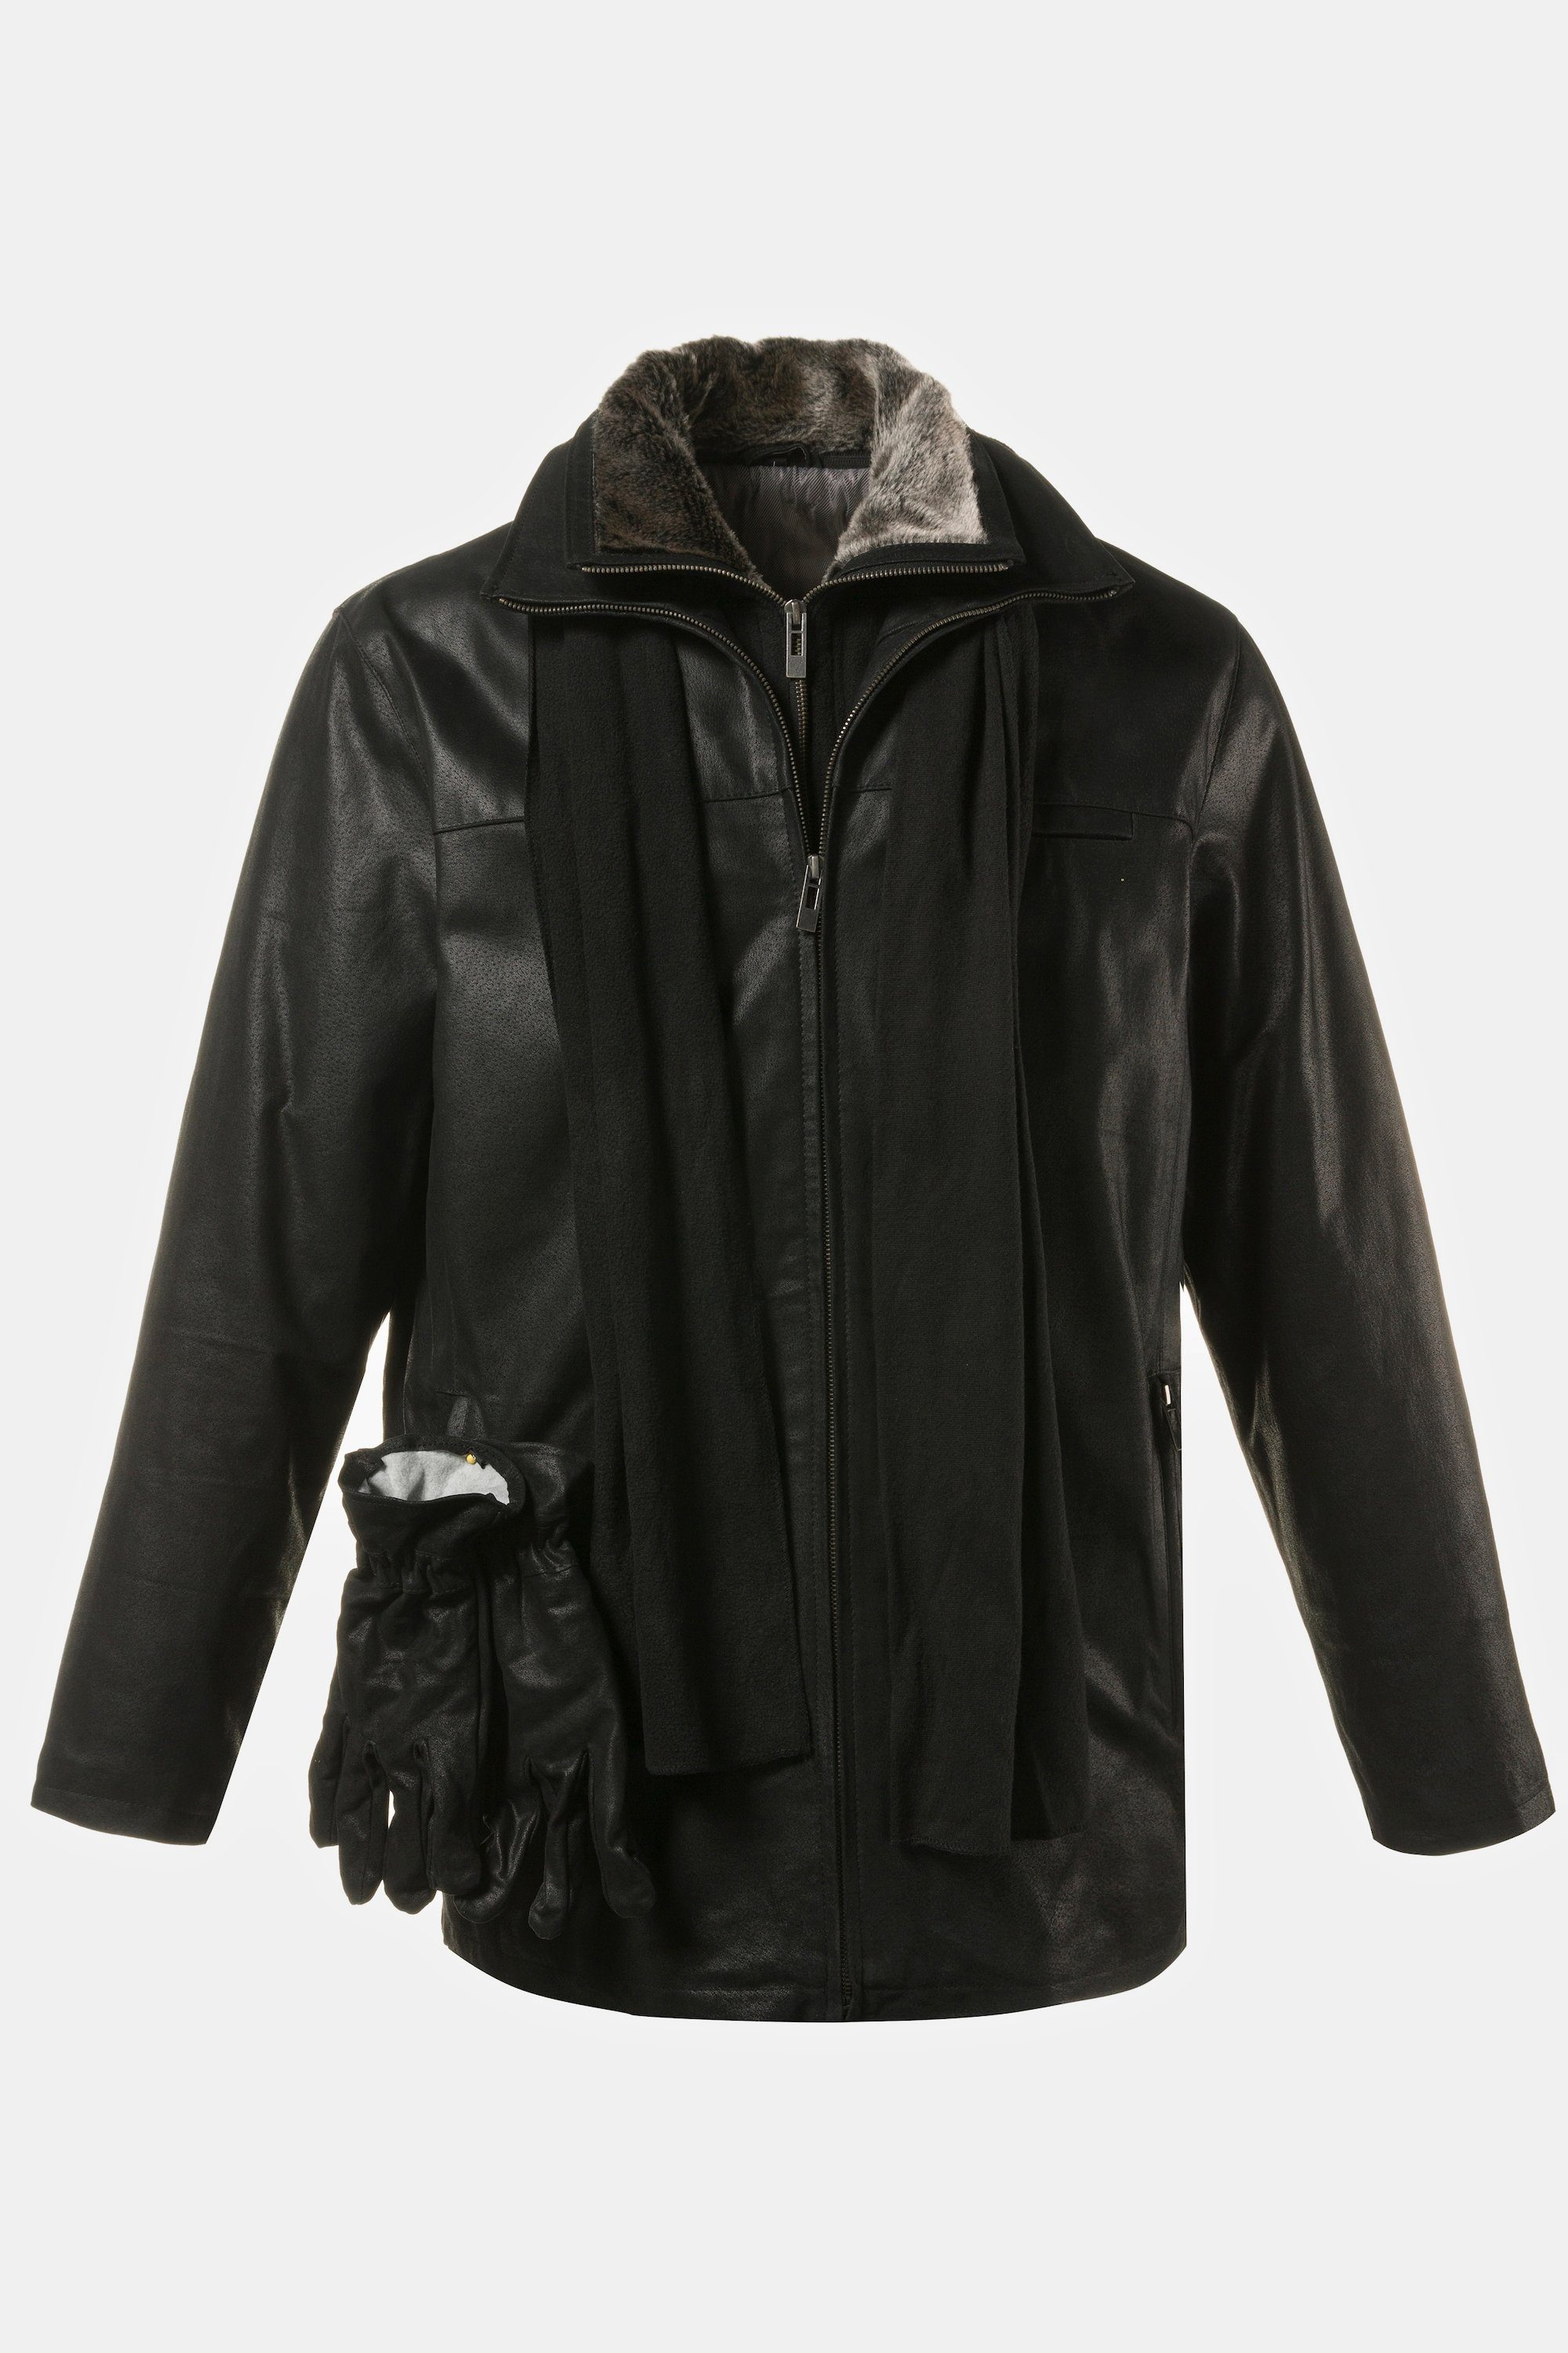 dazu: Leder-Handschuh gratis Leder JP1880 schwarz Jacke Porcleder Lederjacke